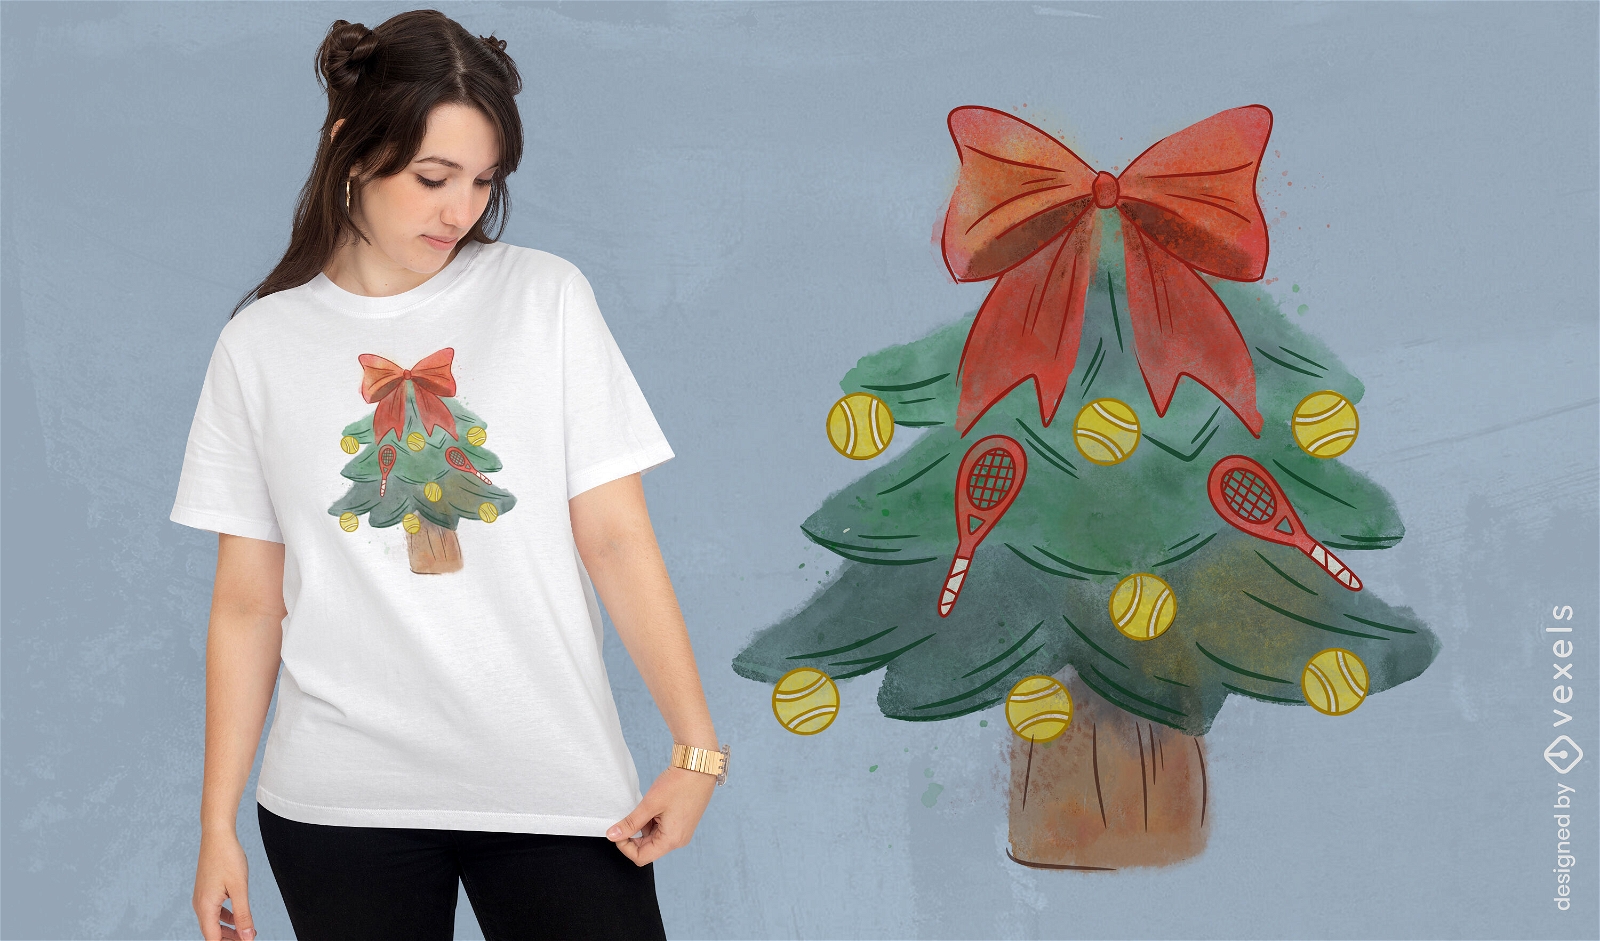 Diseño de camiseta de árbol de Navidad de tenis.